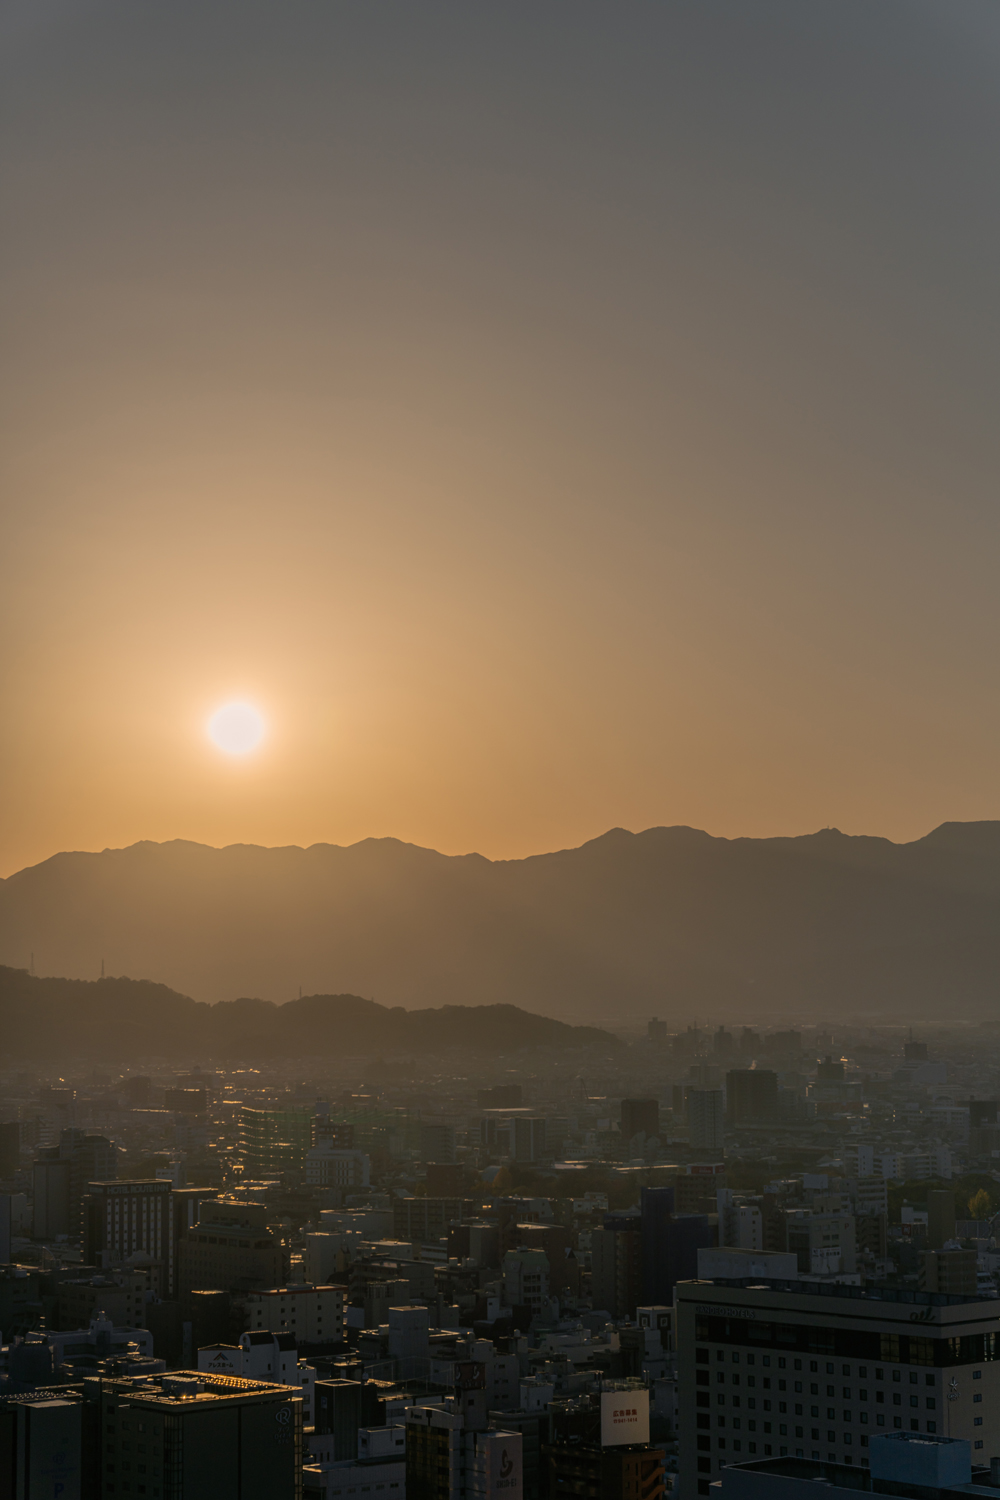 朝もやの松山 / Matsuyama in the Morning haze